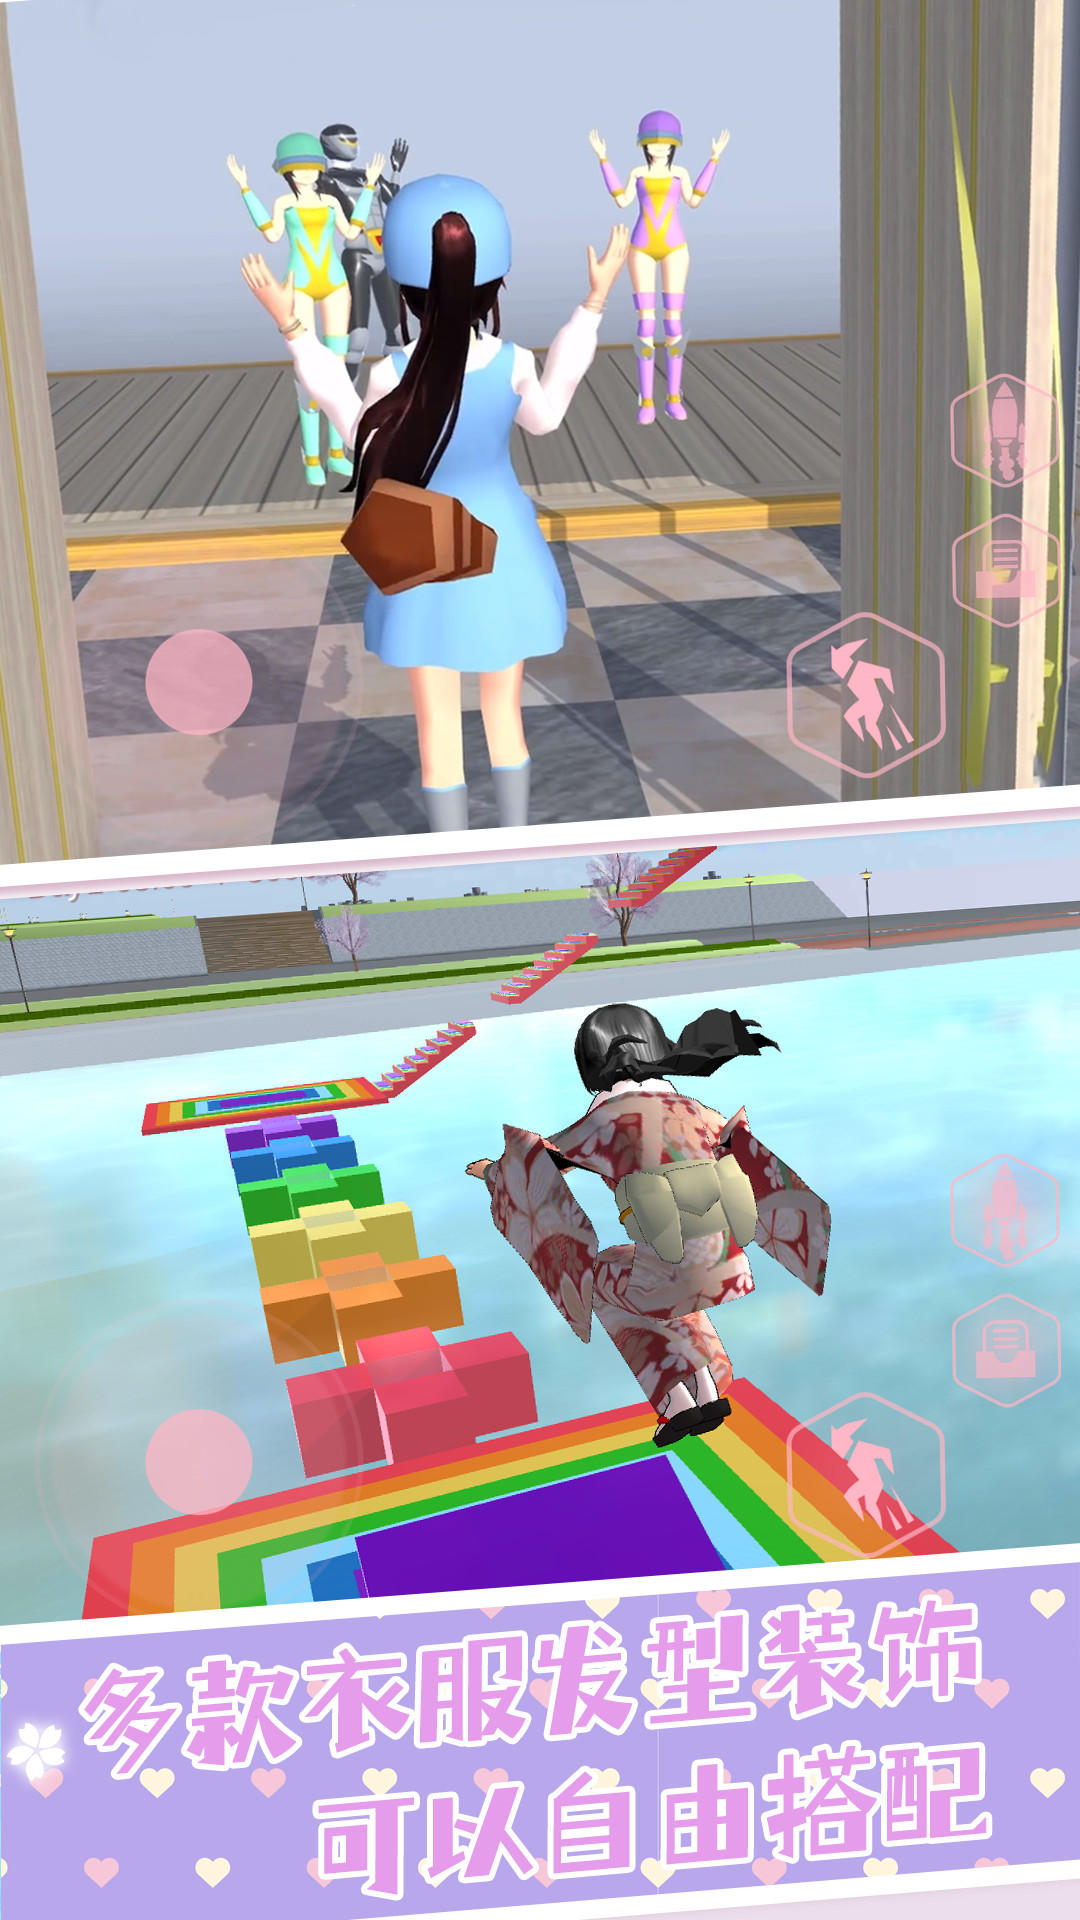 いいね|| ♛| Anime Parkour |♛|| いいね - KoGaMa - Play, Create And Share  Multiplayer Games